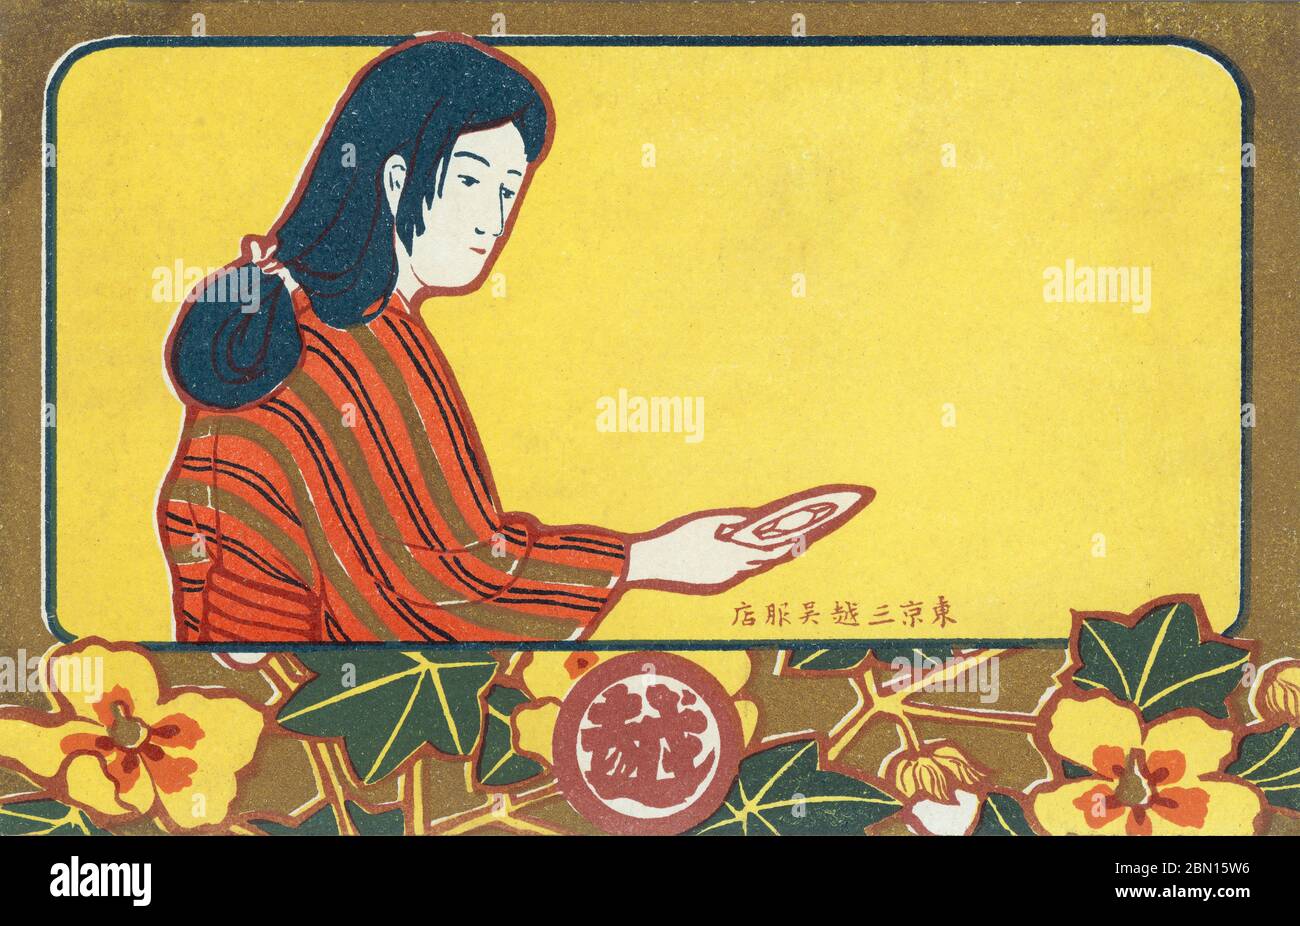 [ 1900 Giappone - Mitsukoshi Pubblicità ] - cartolina pubblicitaria per Mitsukoshi Department Store con un'illustrazione di una donna in kimono. Testo giapponese: Cartolina vintage del 東京三越呉服店 secolo. Foto Stock